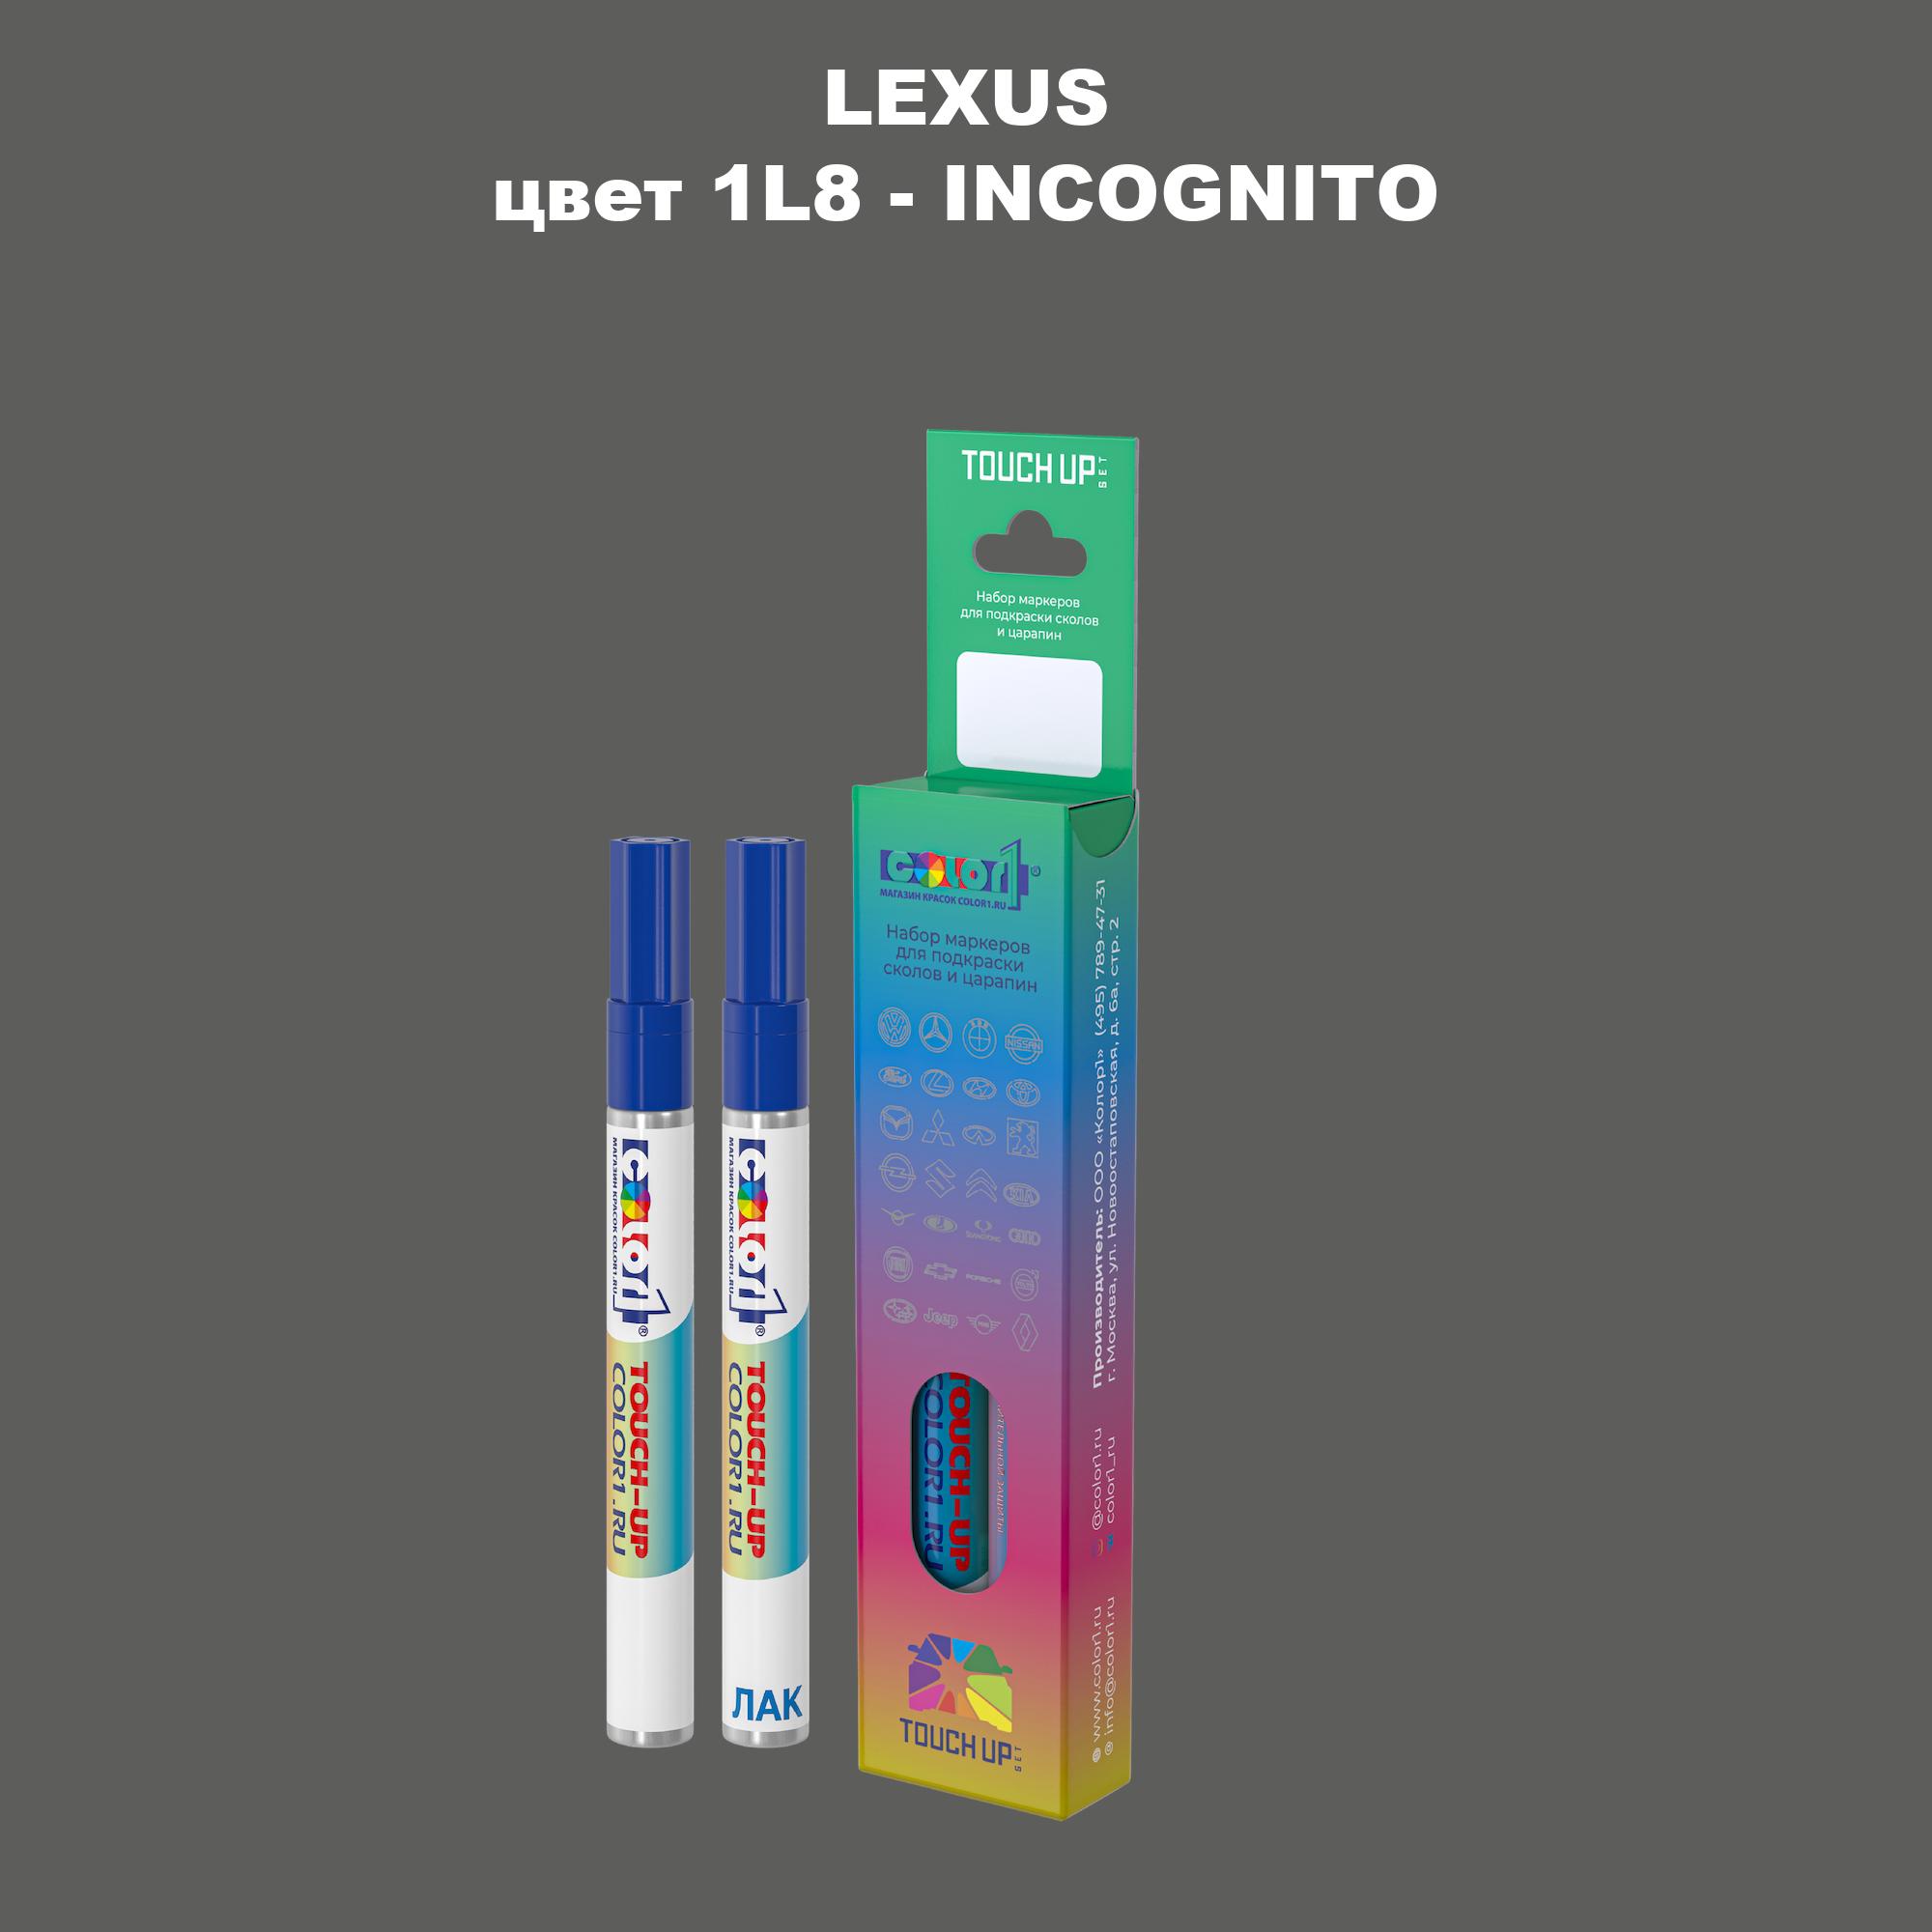 Маркер с краской COLOR1 для LEXUS, цвет 1L8 - INCOGNITO